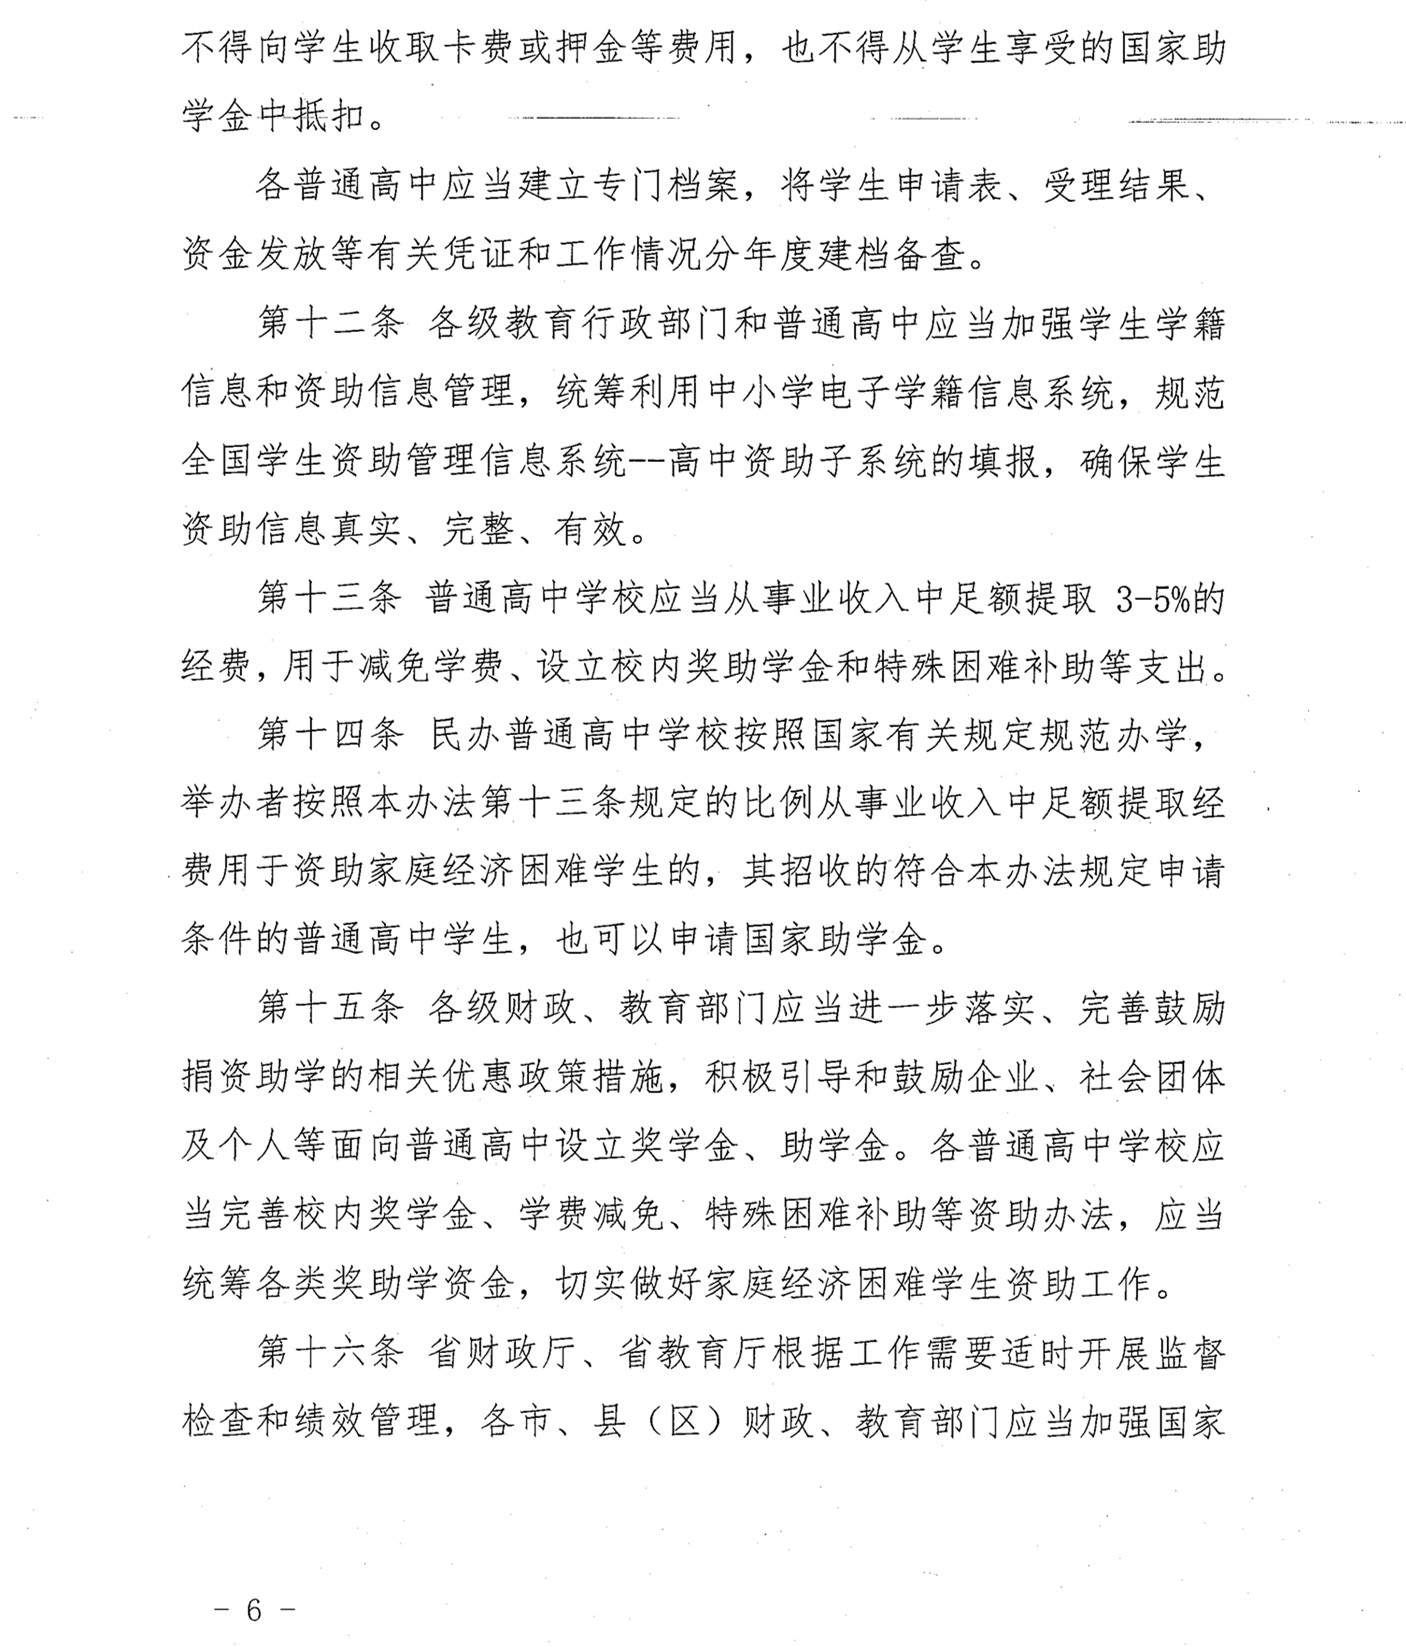 福建省普通高中国家助学金管理办法(2017) (1)_05.jpg